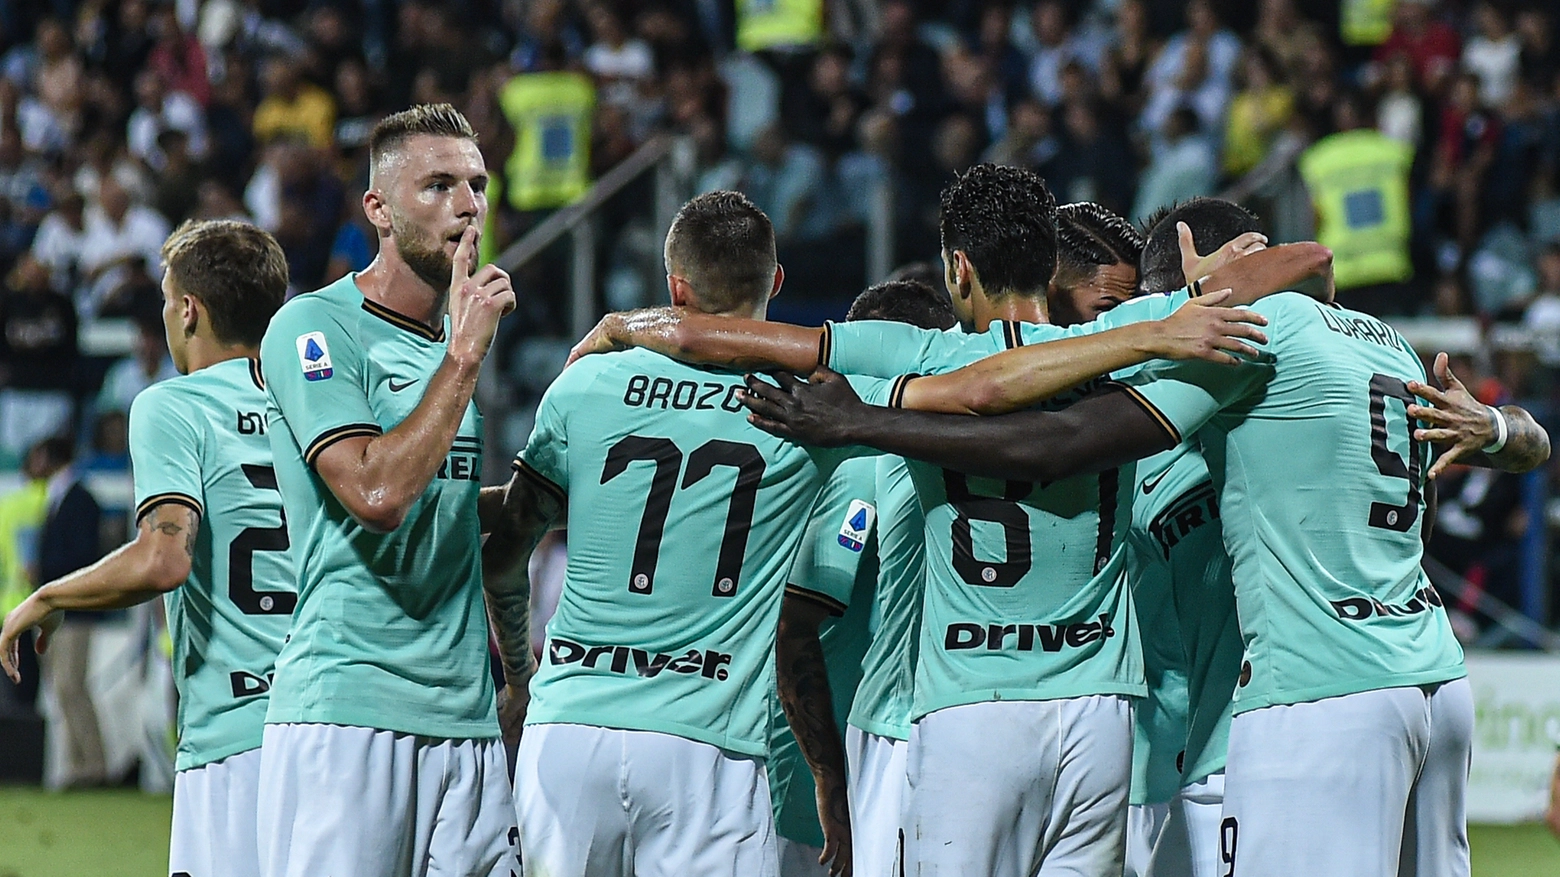 L'Inter impegnata contro l'Udinese per cercare il terzo successo su tre (Lapresse)